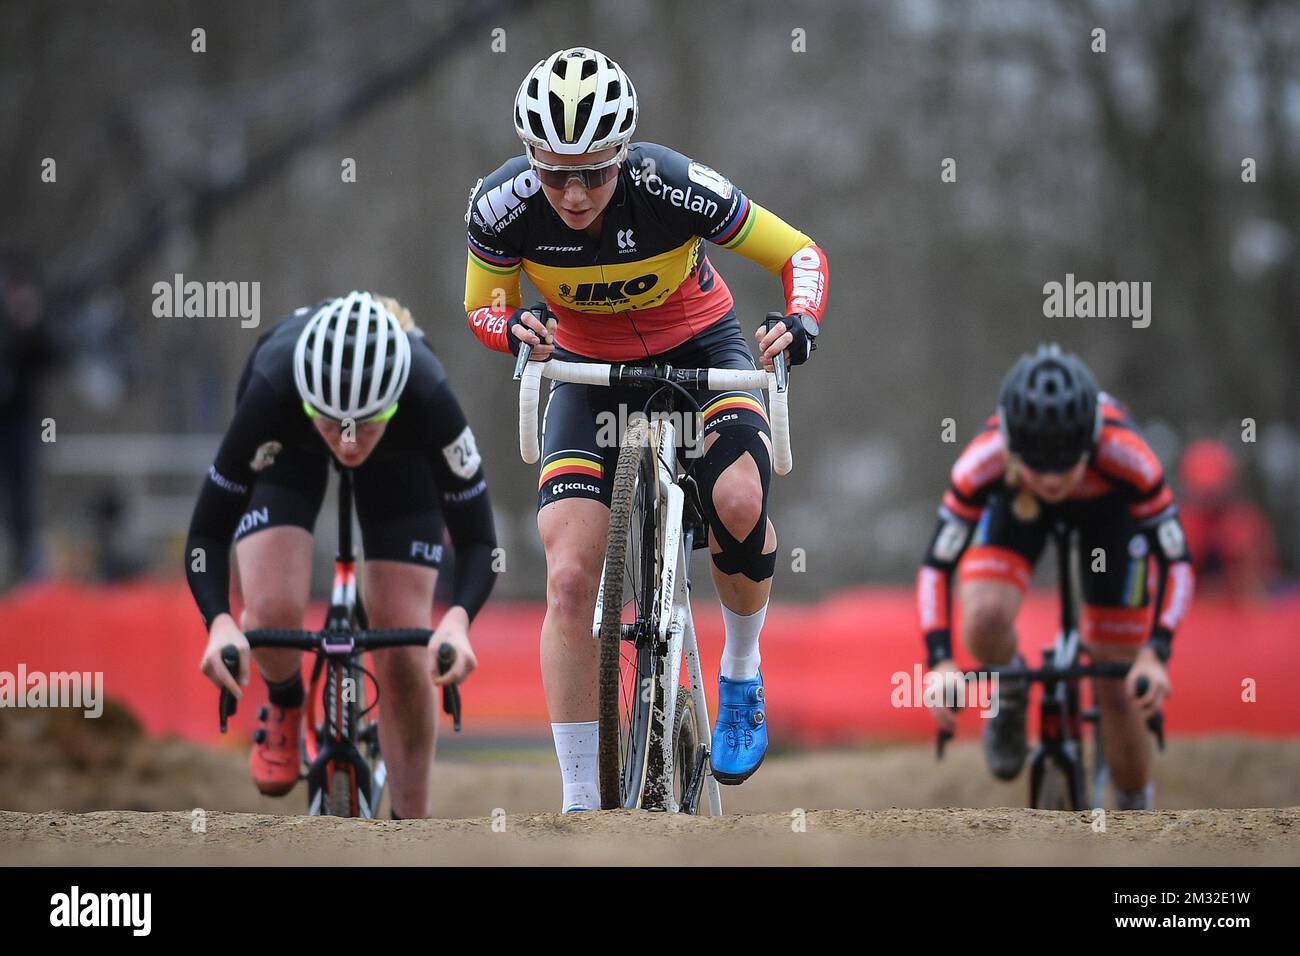 Belge Sanne peut pas photographié en action pendant la course d'élite féminine au 'Cyclocross Leuven', quatrième étape (hors de la glace) dans la compétition de cyclisme 'Rectavit Series', samedi 22 février 2020 à Heverlee, Louvain. BELGA PHOTO DAVID STOCKMAN Banque D'Images